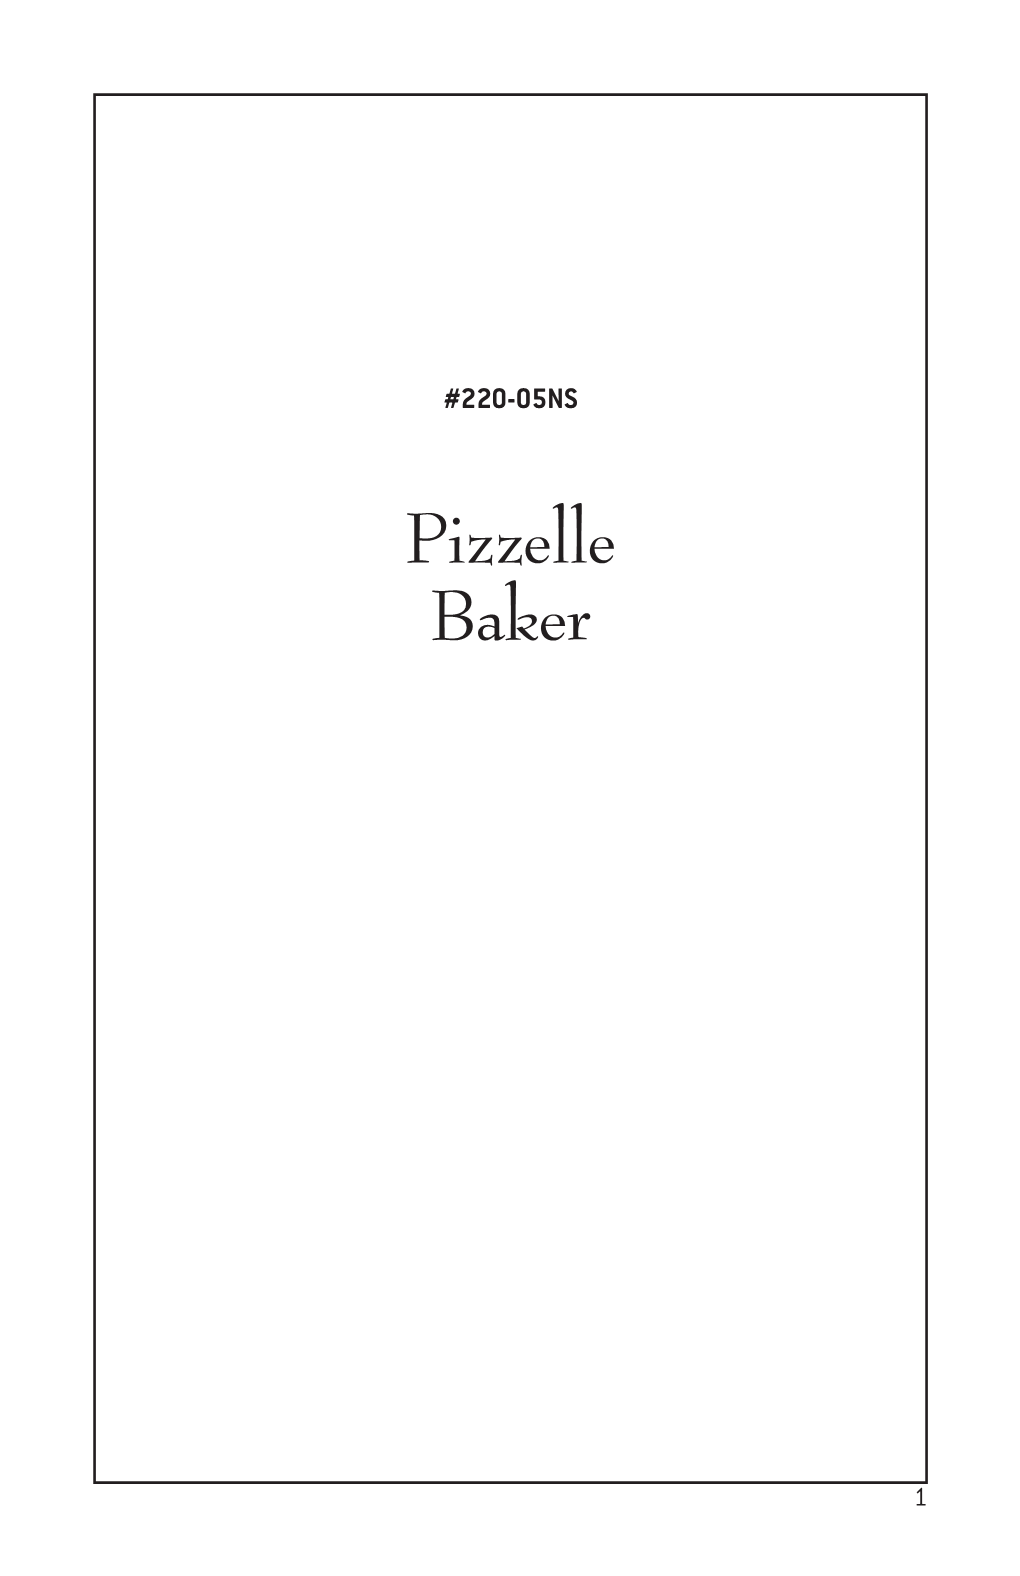 Pizzelle Baker